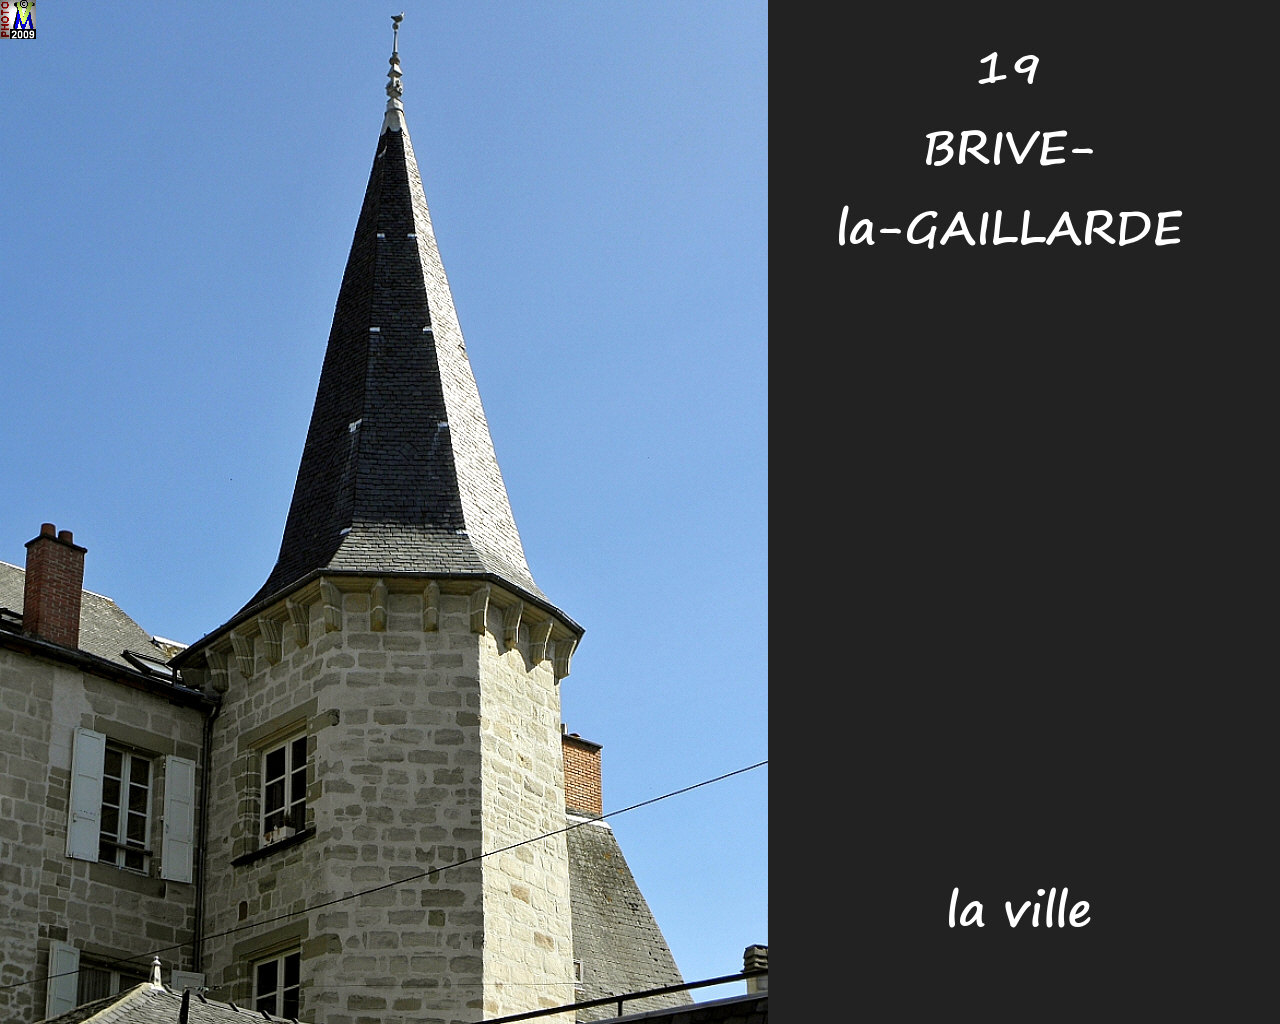 19BRIVE-GAILLARDE_ville_128.jpg